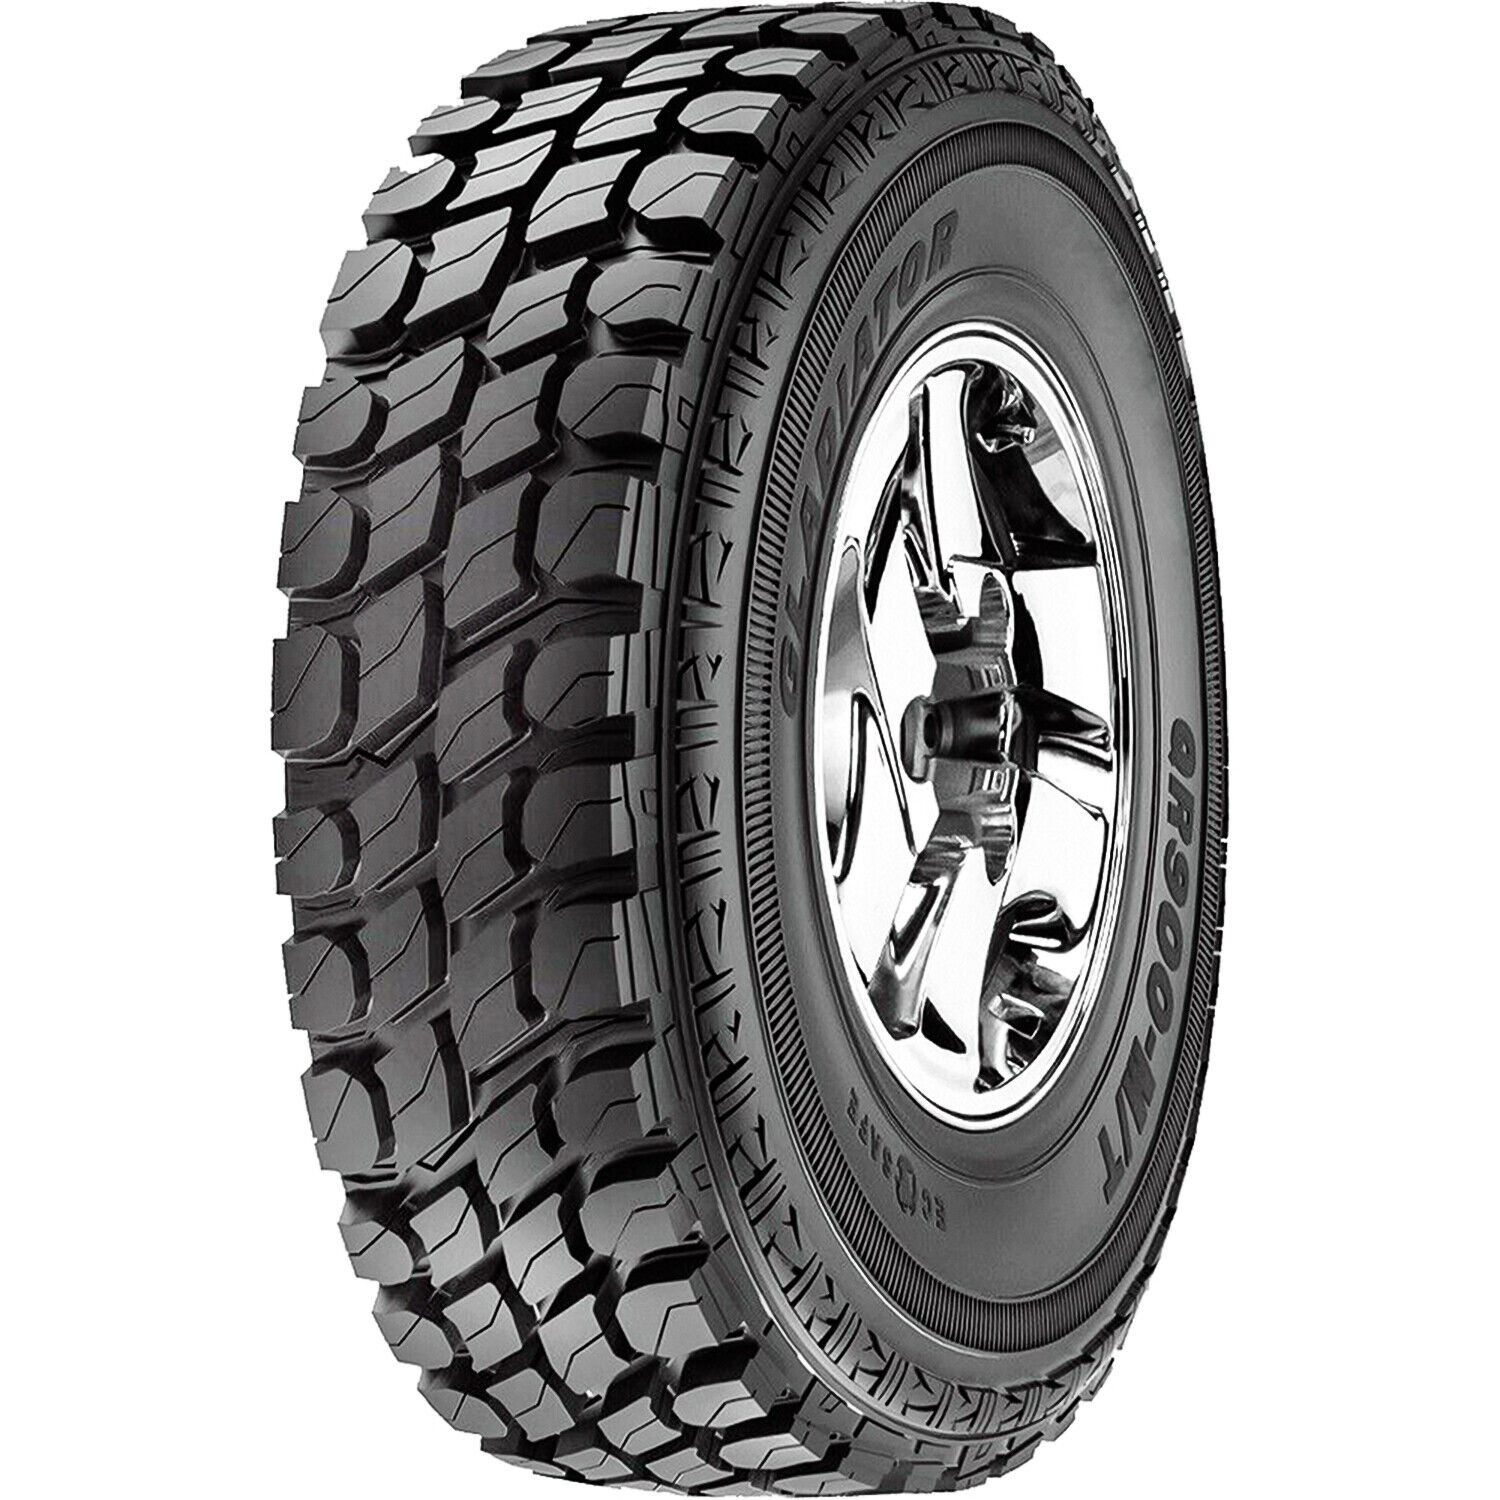 4 Tires Gladiator QR900-M/T LT 35X12.50R20 121Q Load E 10 Ply MT Mud